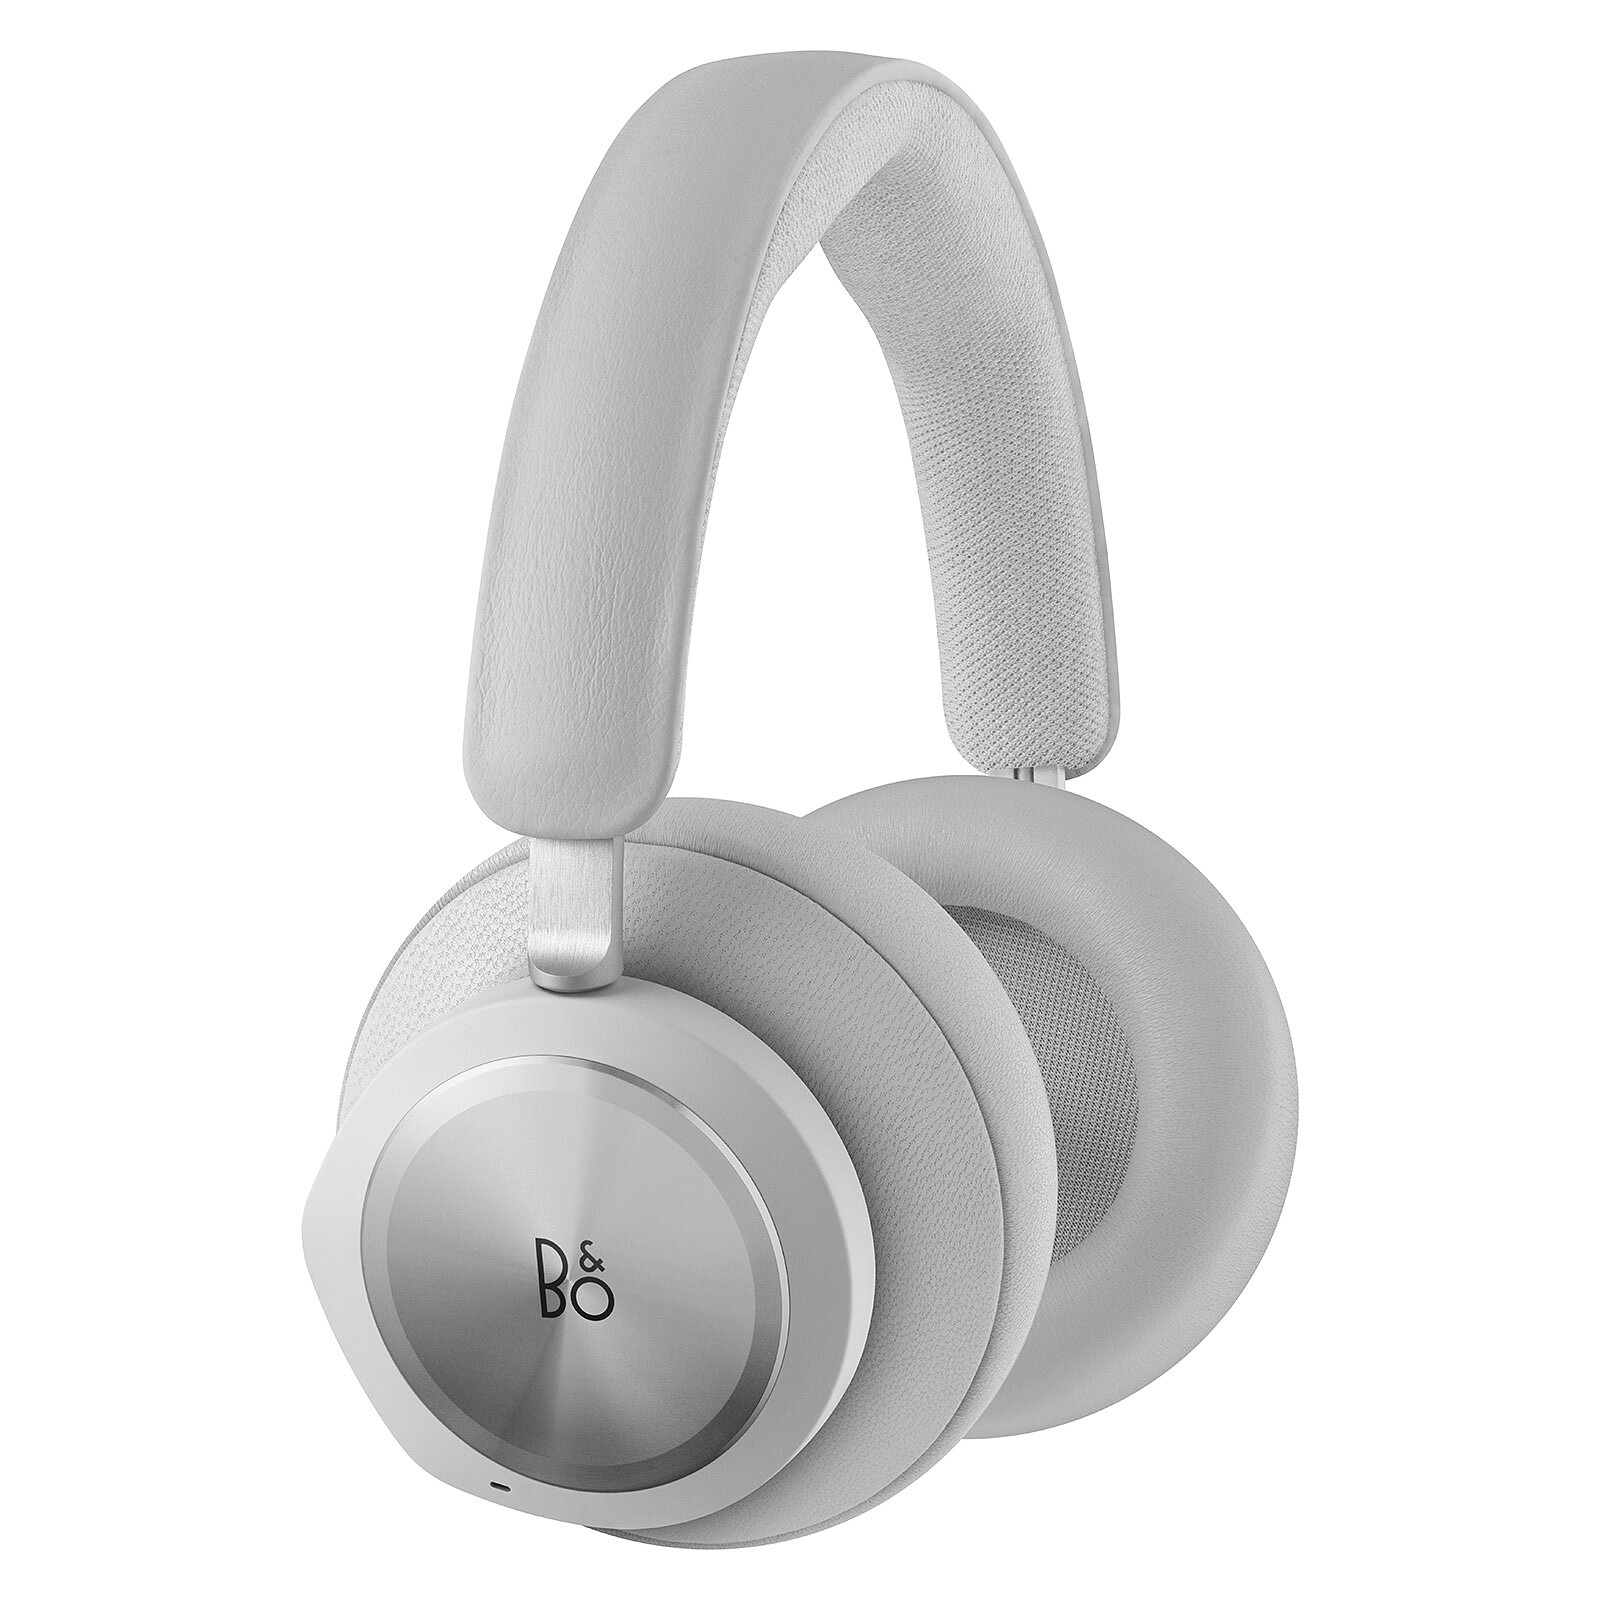 dolby 5.1 wireless headphones